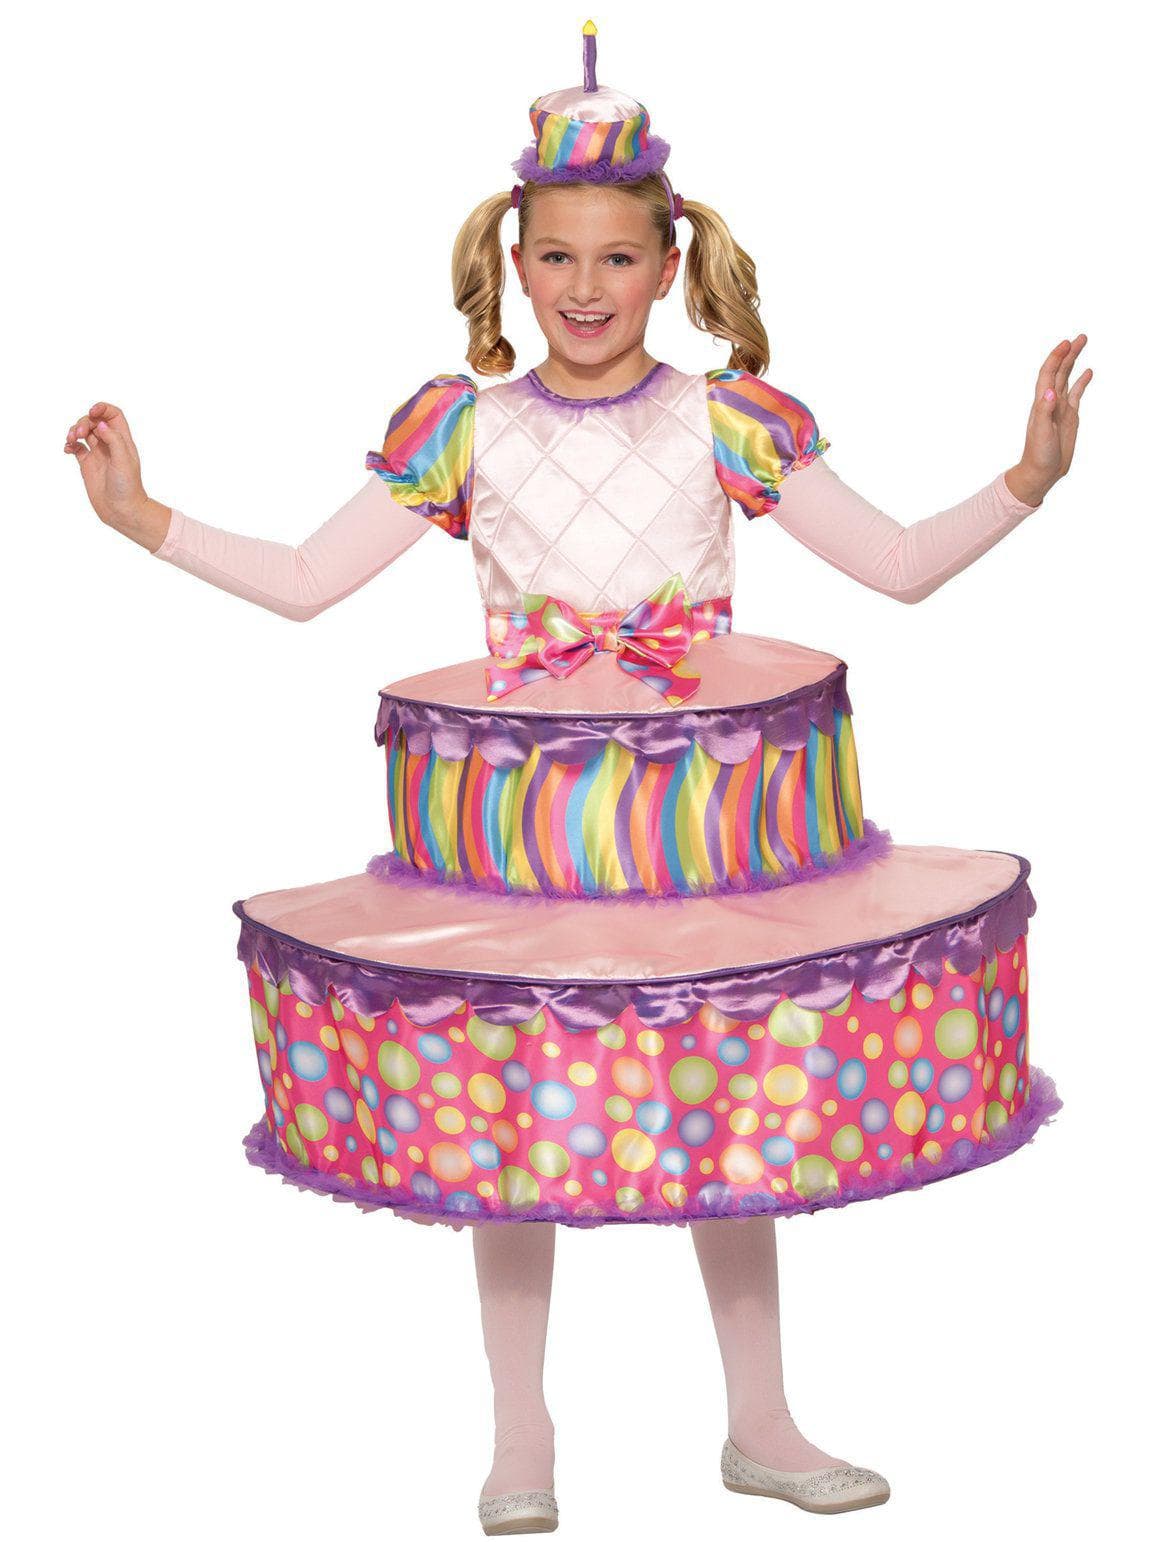 Birthday Cake Child Costume - costumes.com